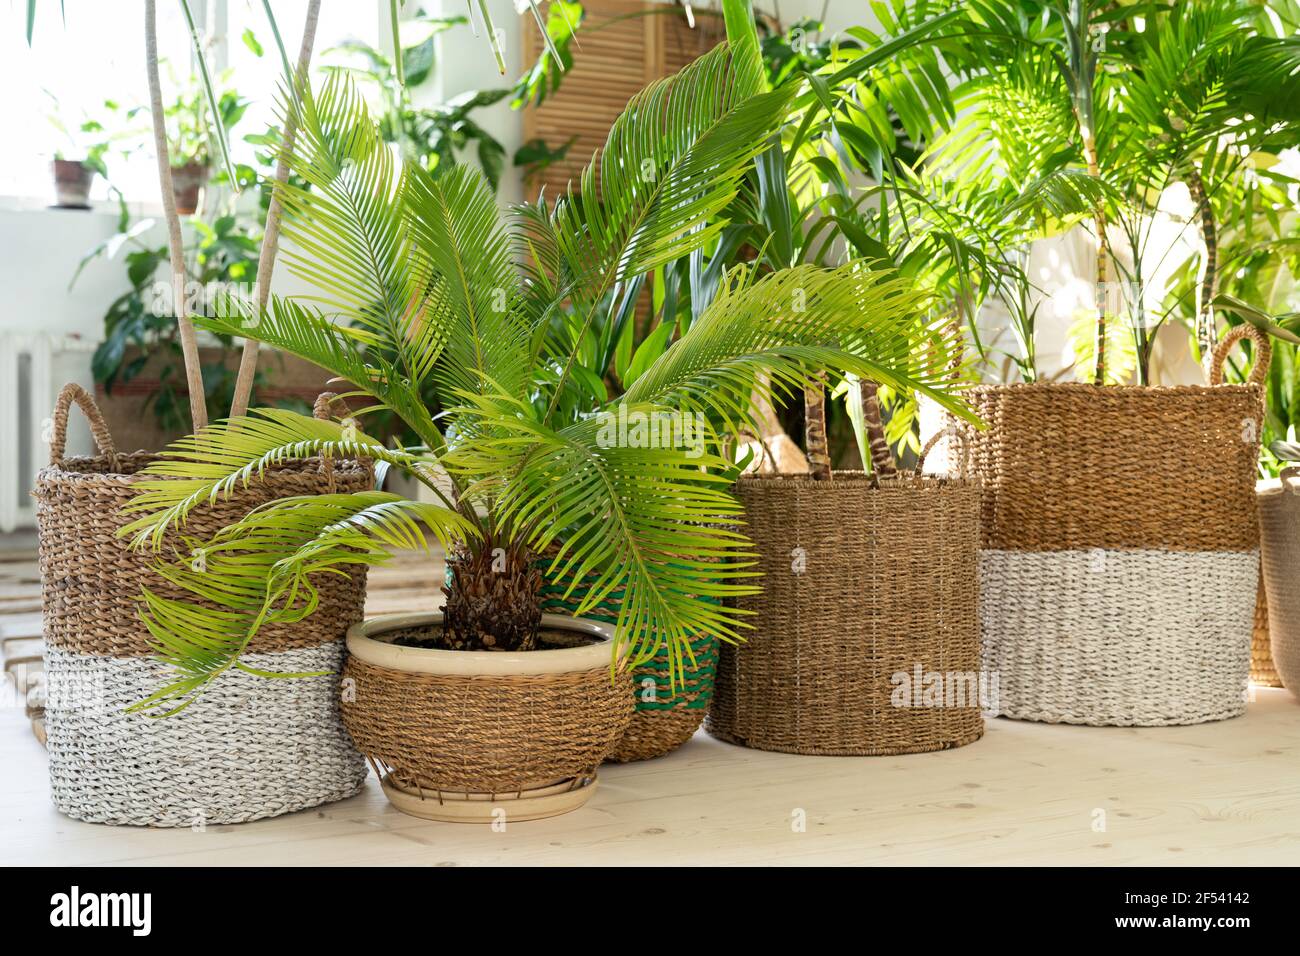 Plantez des cycas, divers palmiers dans des pots en osier sur parquet dans la salle de séjour. Jardin d'intérieur, jungle urbaine Banque D'Images